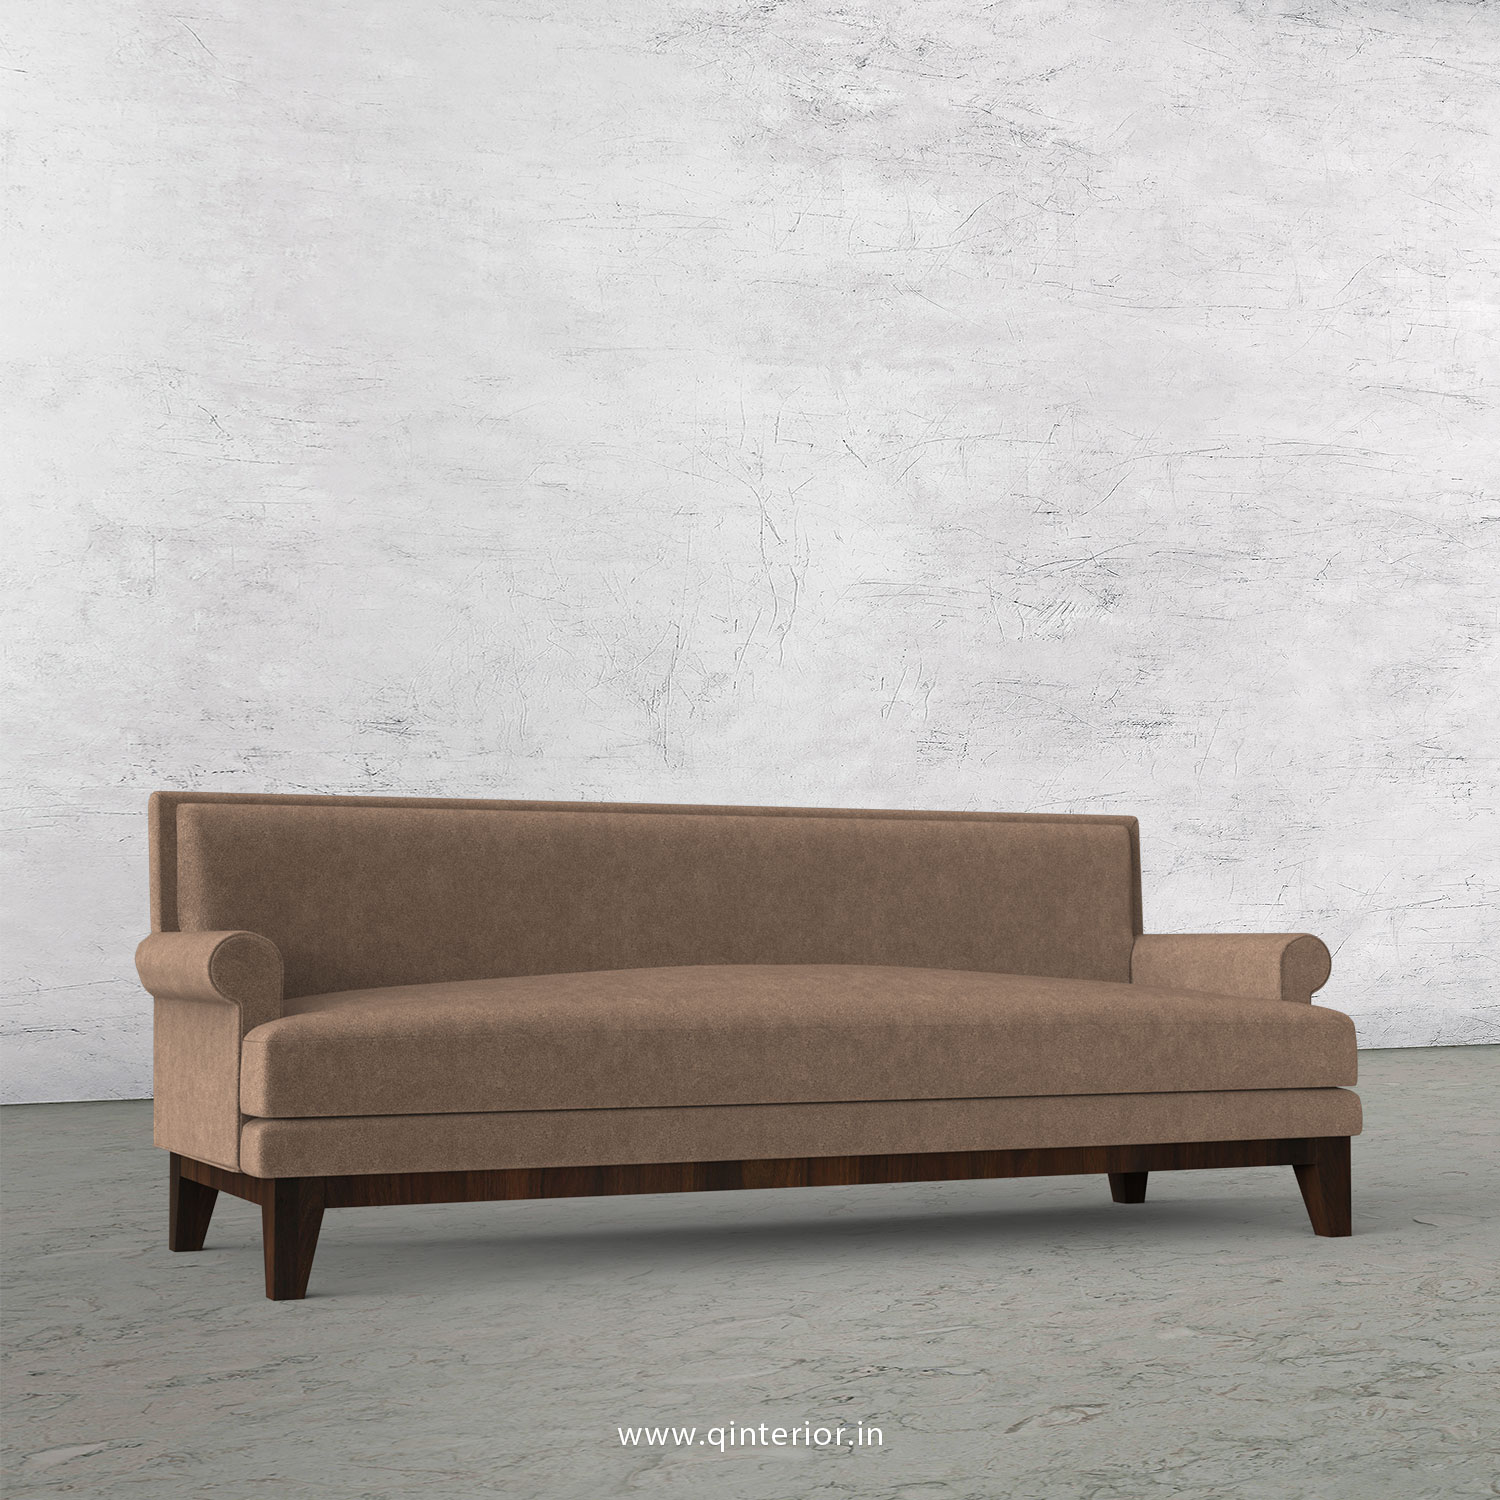 Aviana 3 Seater Sofa in Velvet Fabric - SFA001 VL02